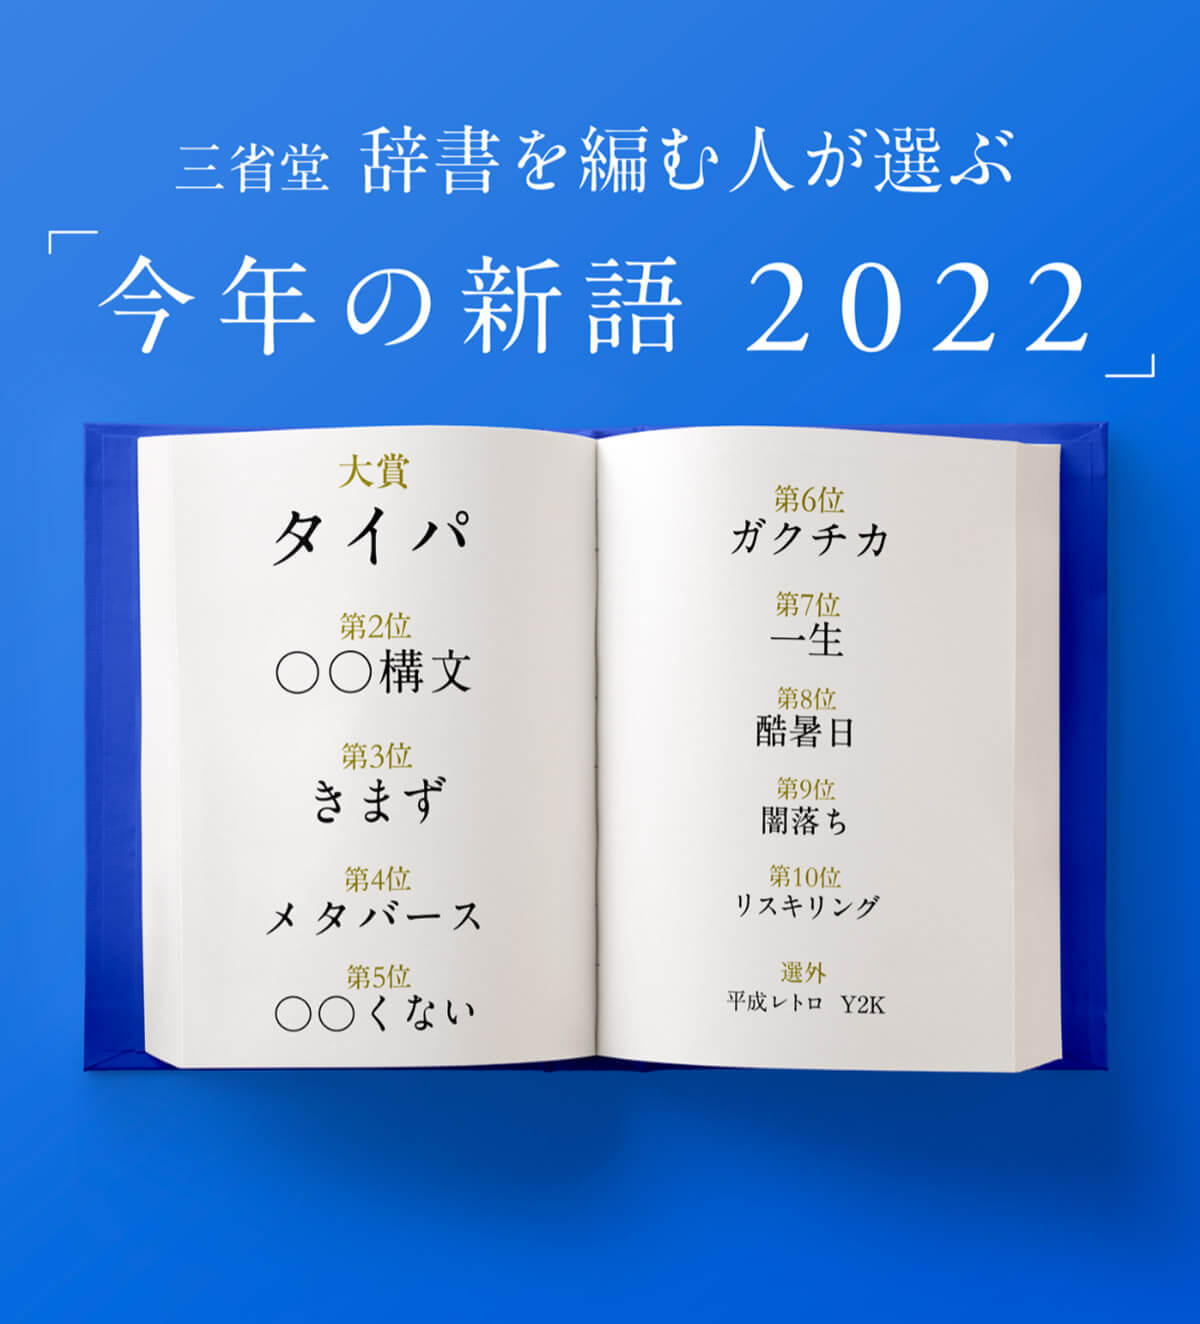 三省堂 辞書を編む人が選ぶ『今年の新語2022』選考発表会